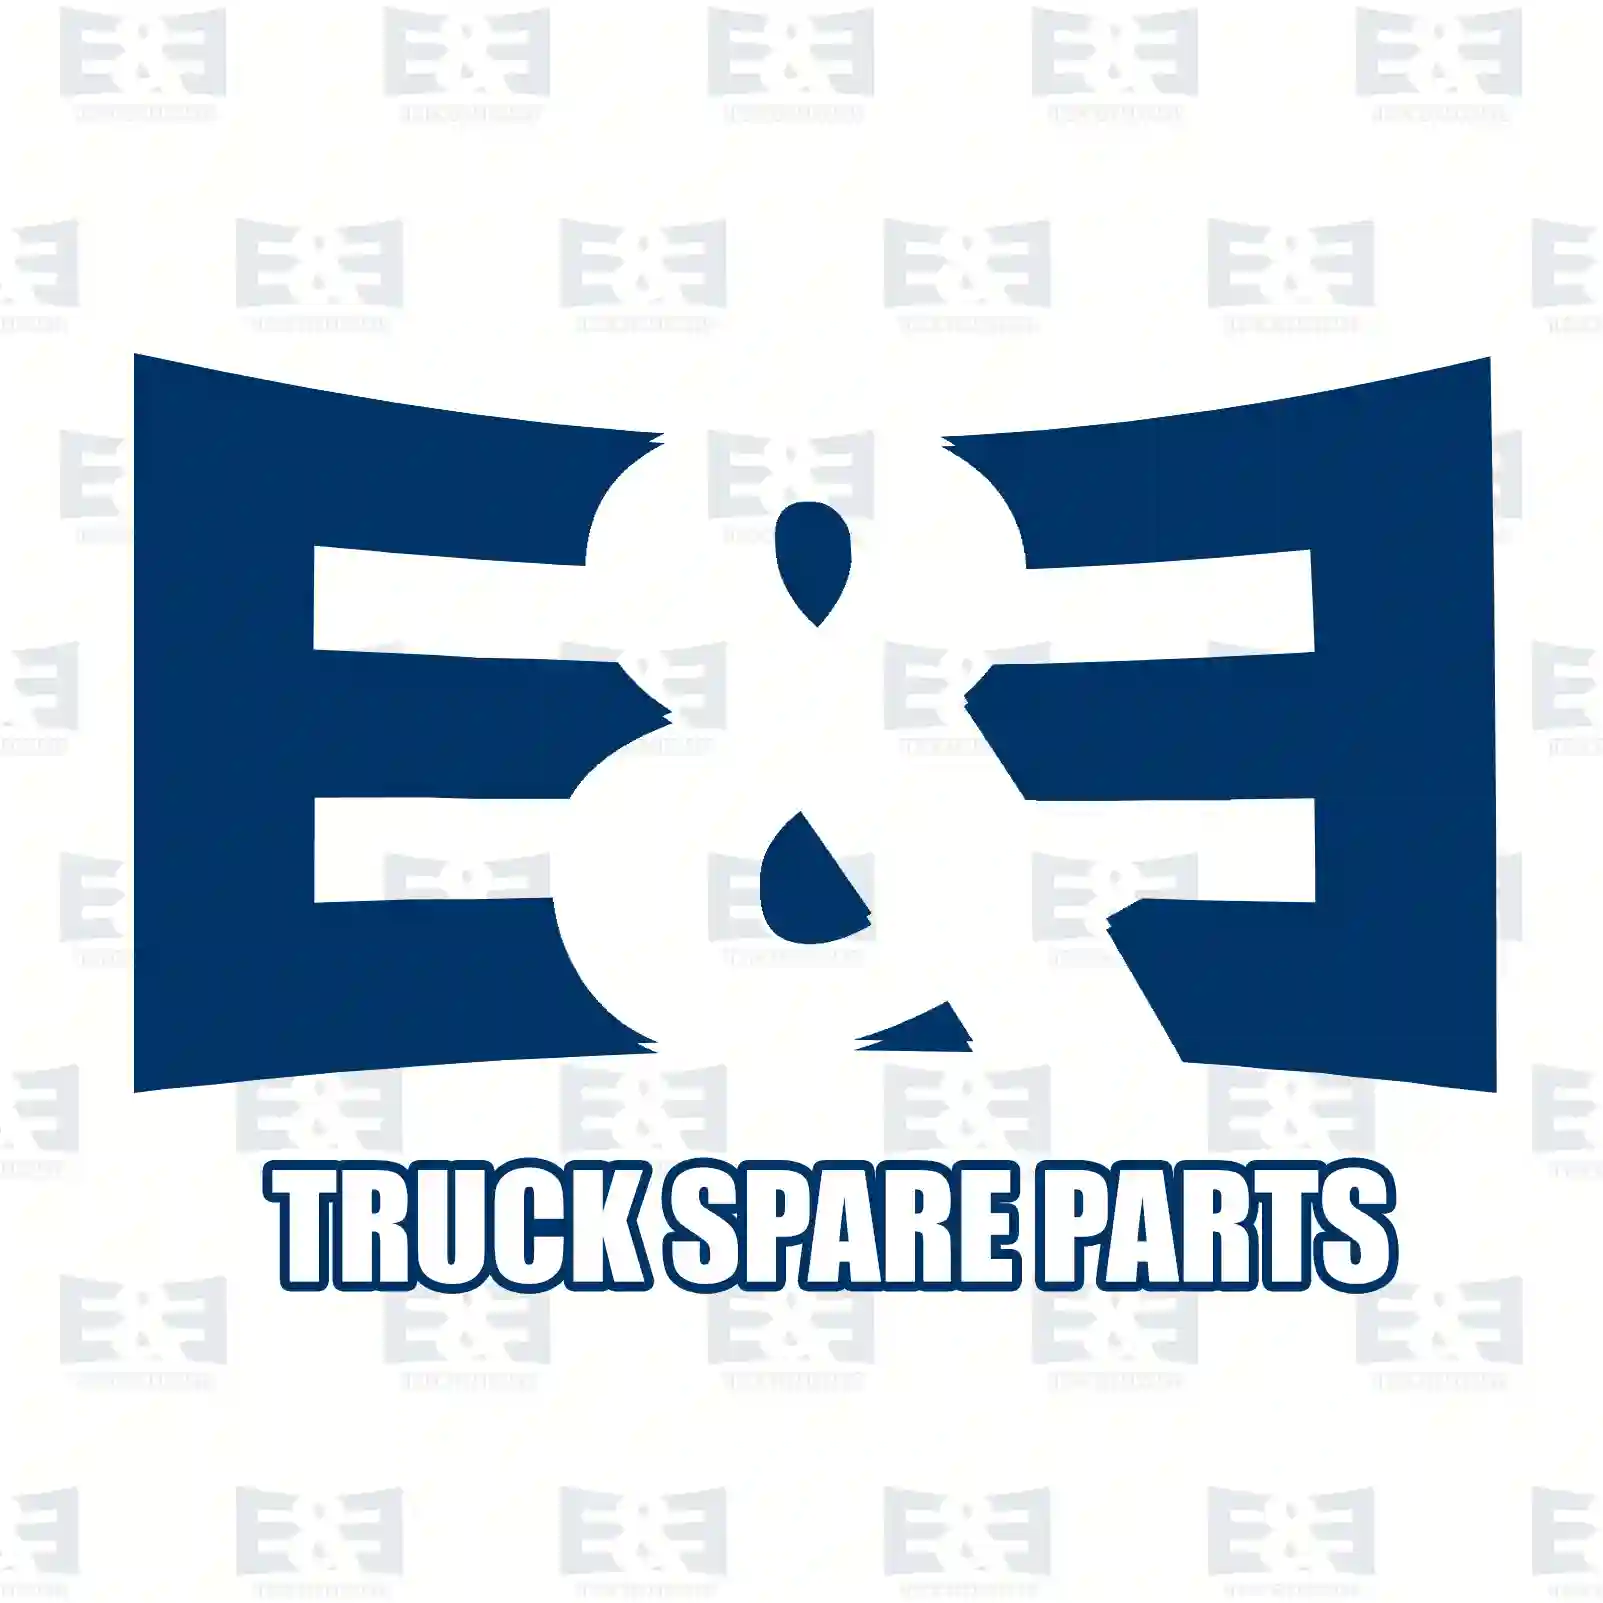 Oil seal, 2E2284931, 1409889, 1534012, 1740992, ZG02612-0008, ||  2E2284931 E&E Truck Spare Parts | Truck Spare Parts, Auotomotive Spare Parts Oil seal, 2E2284931, 1409889, 1534012, 1740992, ZG02612-0008, ||  2E2284931 E&E Truck Spare Parts | Truck Spare Parts, Auotomotive Spare Parts